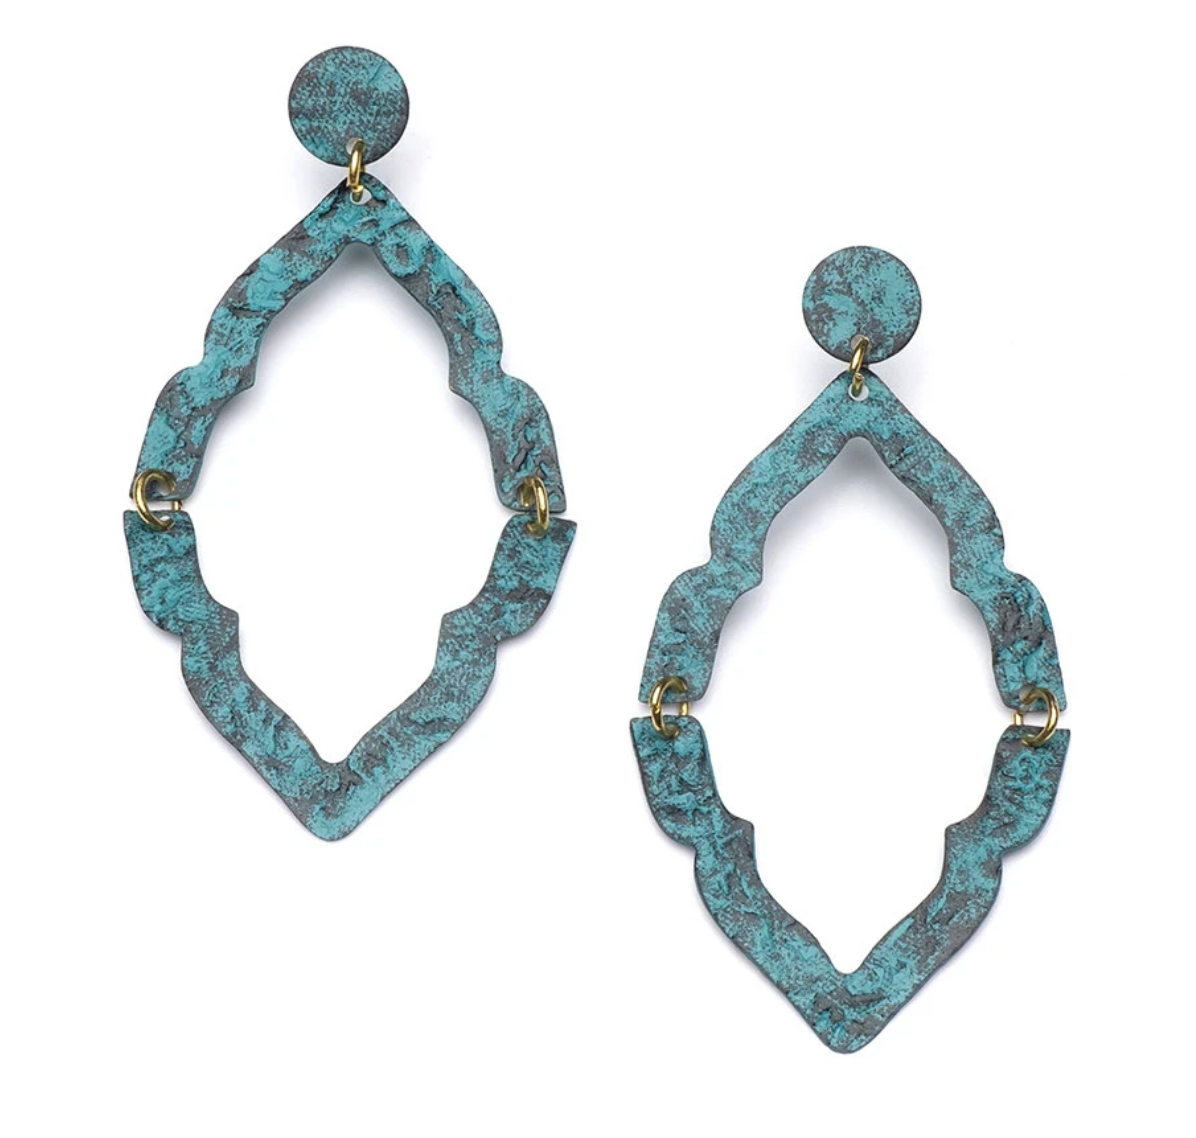 Nihira Ashram Teal Window Earrings - CJ Gift Shoppe